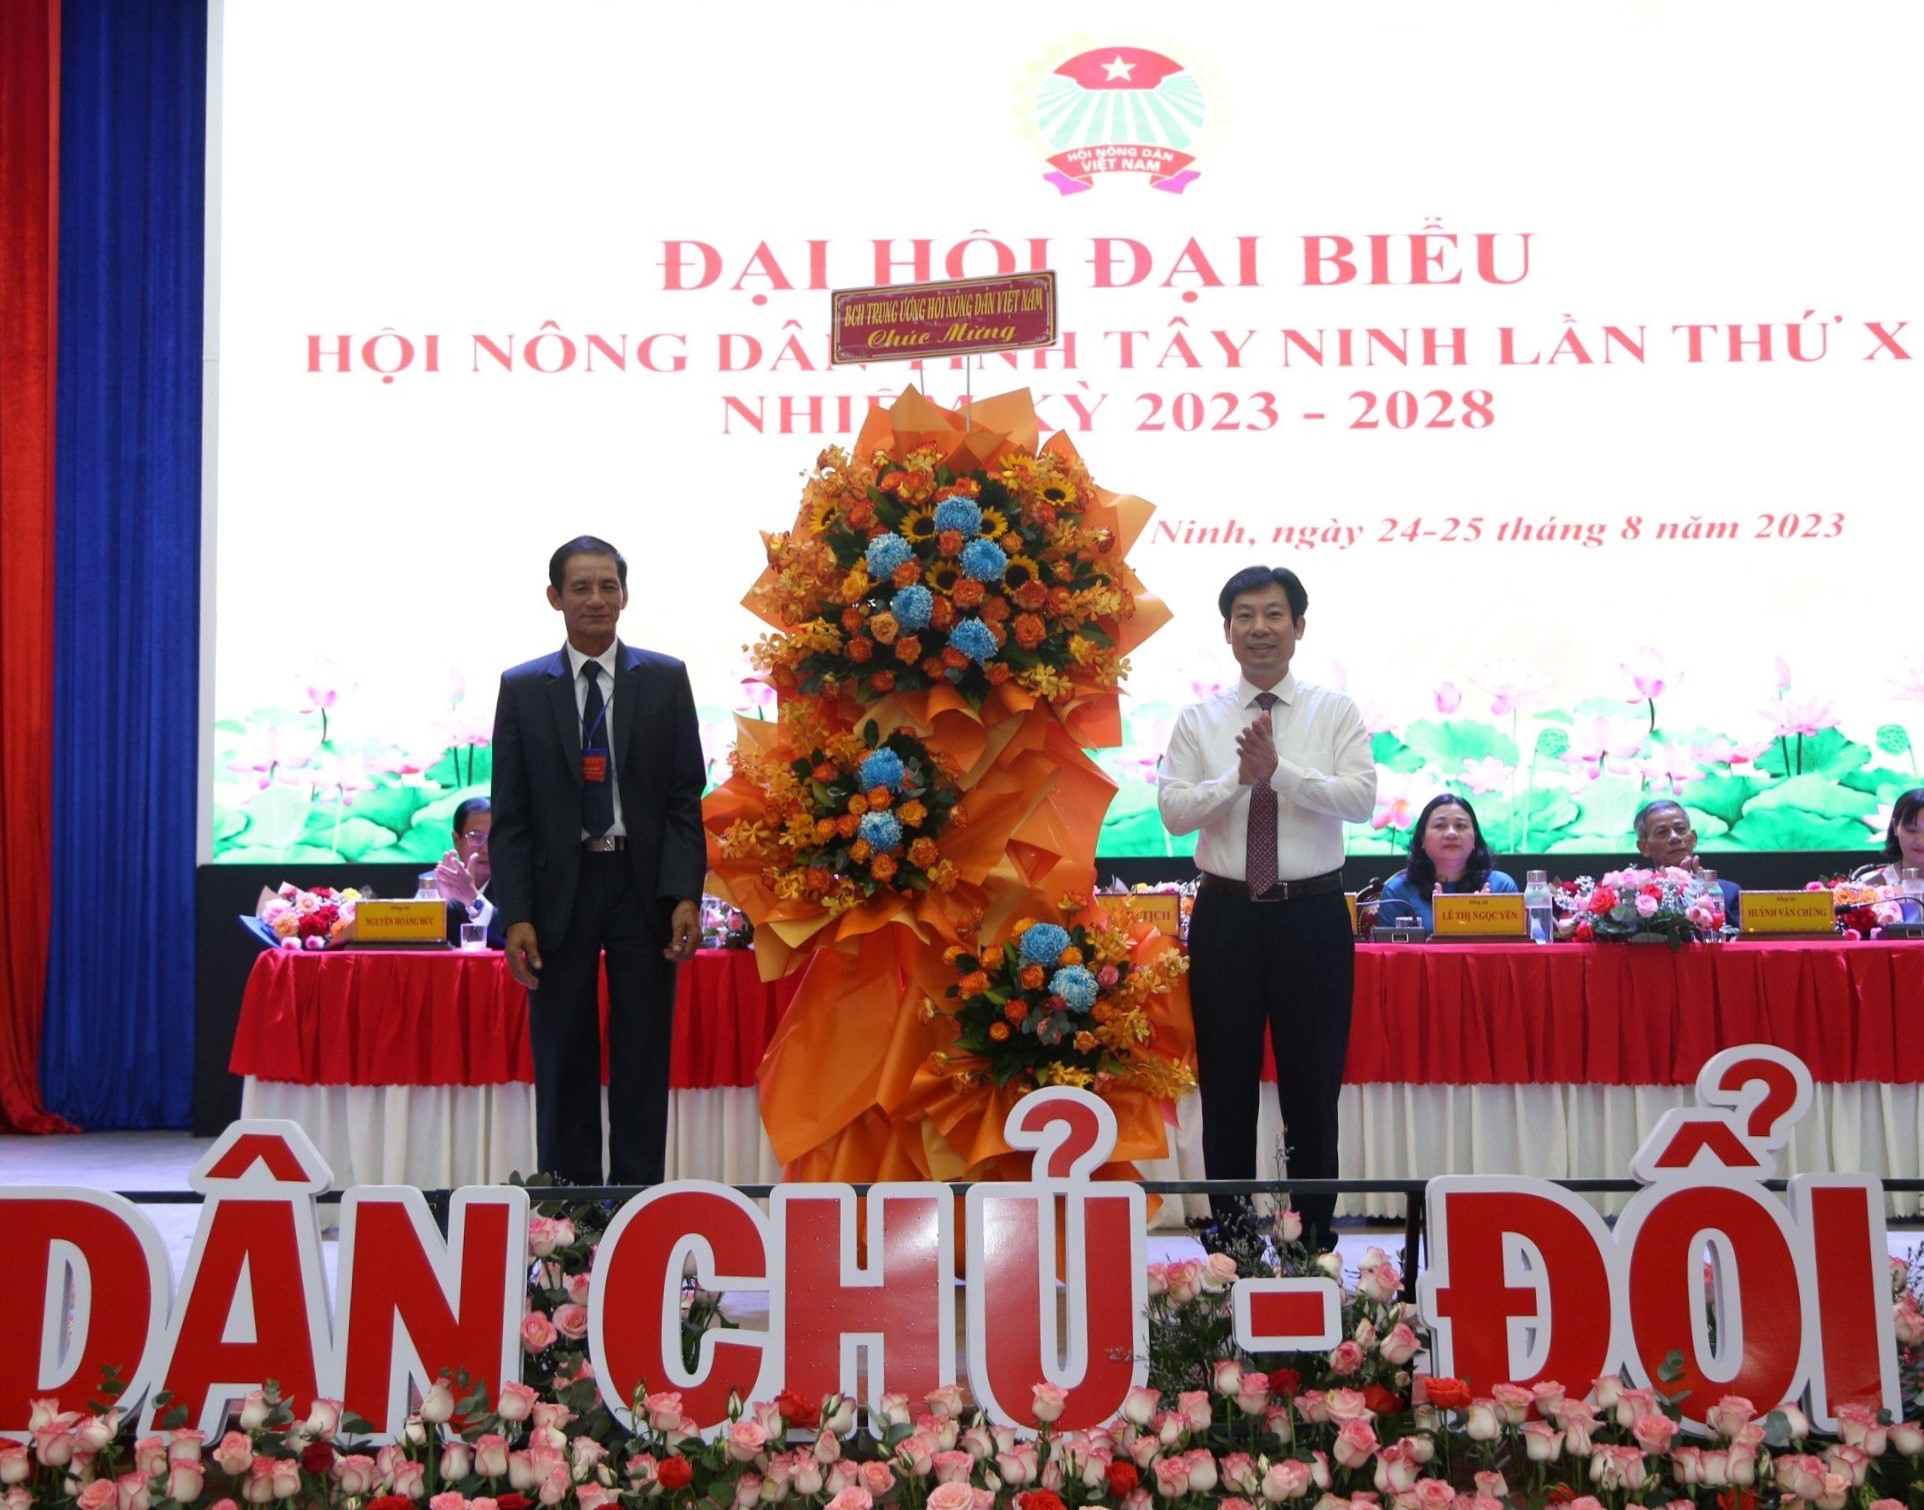 Phó Chủ tịch Hội NDVN Nguyễn Xuân Định dự Đại hội đại biểu Hội Nông dân tỉnh Tây Ninh - Ảnh 3.